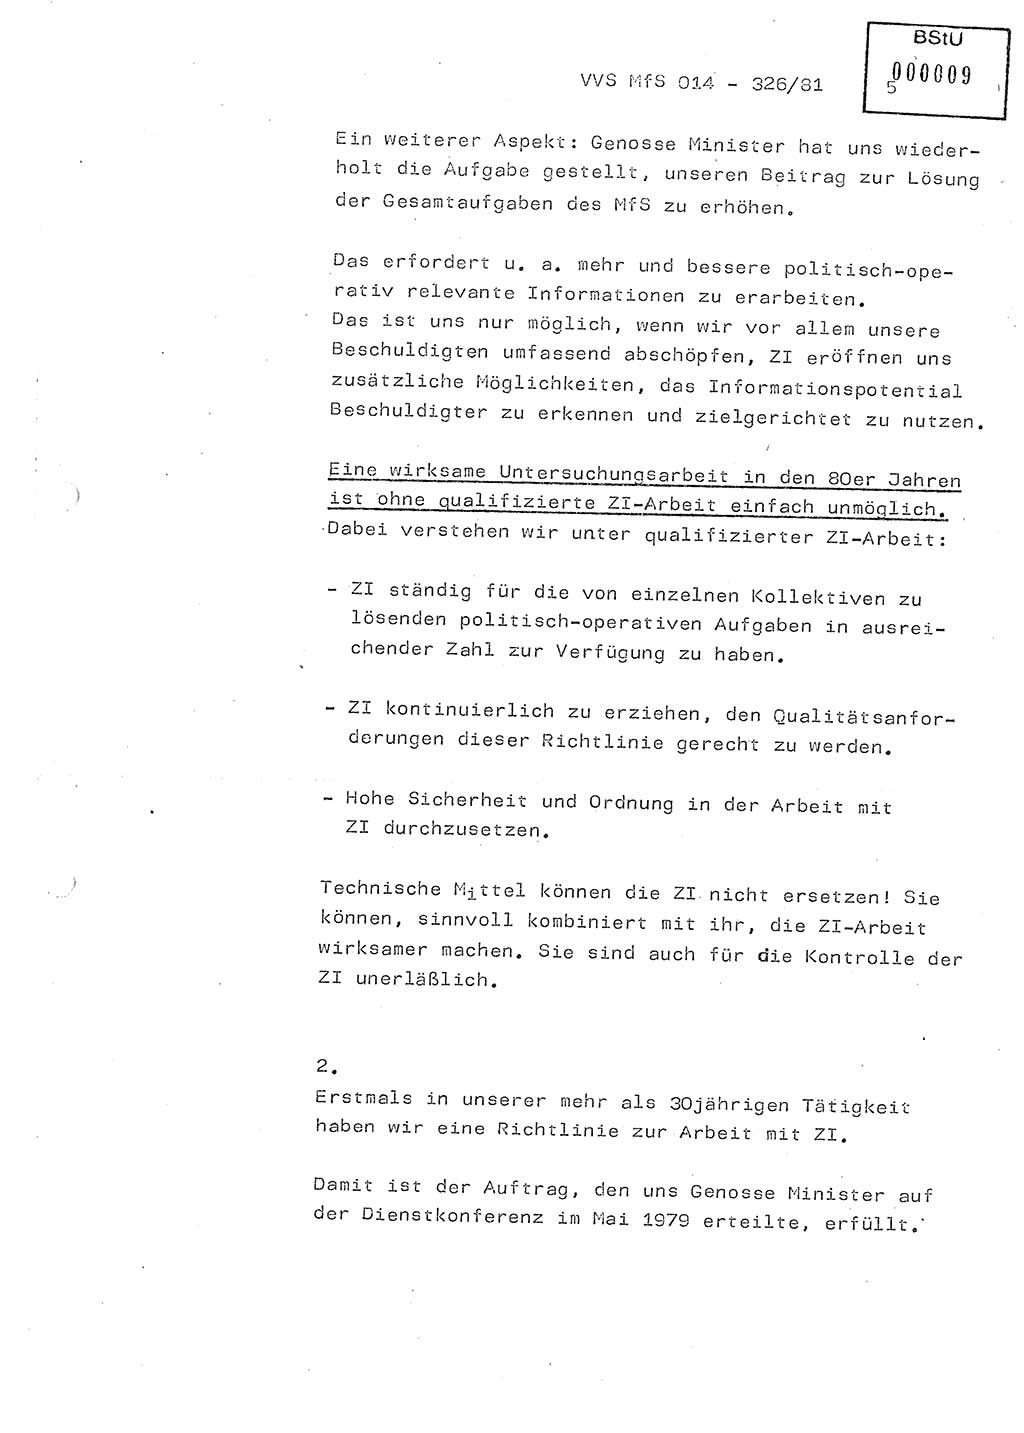 Thesen zum Einführungsvortrag für die Schulung zur Richtlinie Nr. 2/81 [zur Arbeit mit Zelleninformatoren (ZI)] des Genossen Minister (Generaloberst Erich Mielke), Ministerium für Staatssicherheit (MfS) [Deutsche Demokratische Republik (DDR)], Hauptabteilung (HA) Ⅸ, Vertrauliche Verschlußsache (VVS) 014-326/81, Berlin 1981, Seite 5 (Th. Sch. RL 2/81 MfS DDR HA Ⅸ VVS 014-326/81 1981, S. 5)